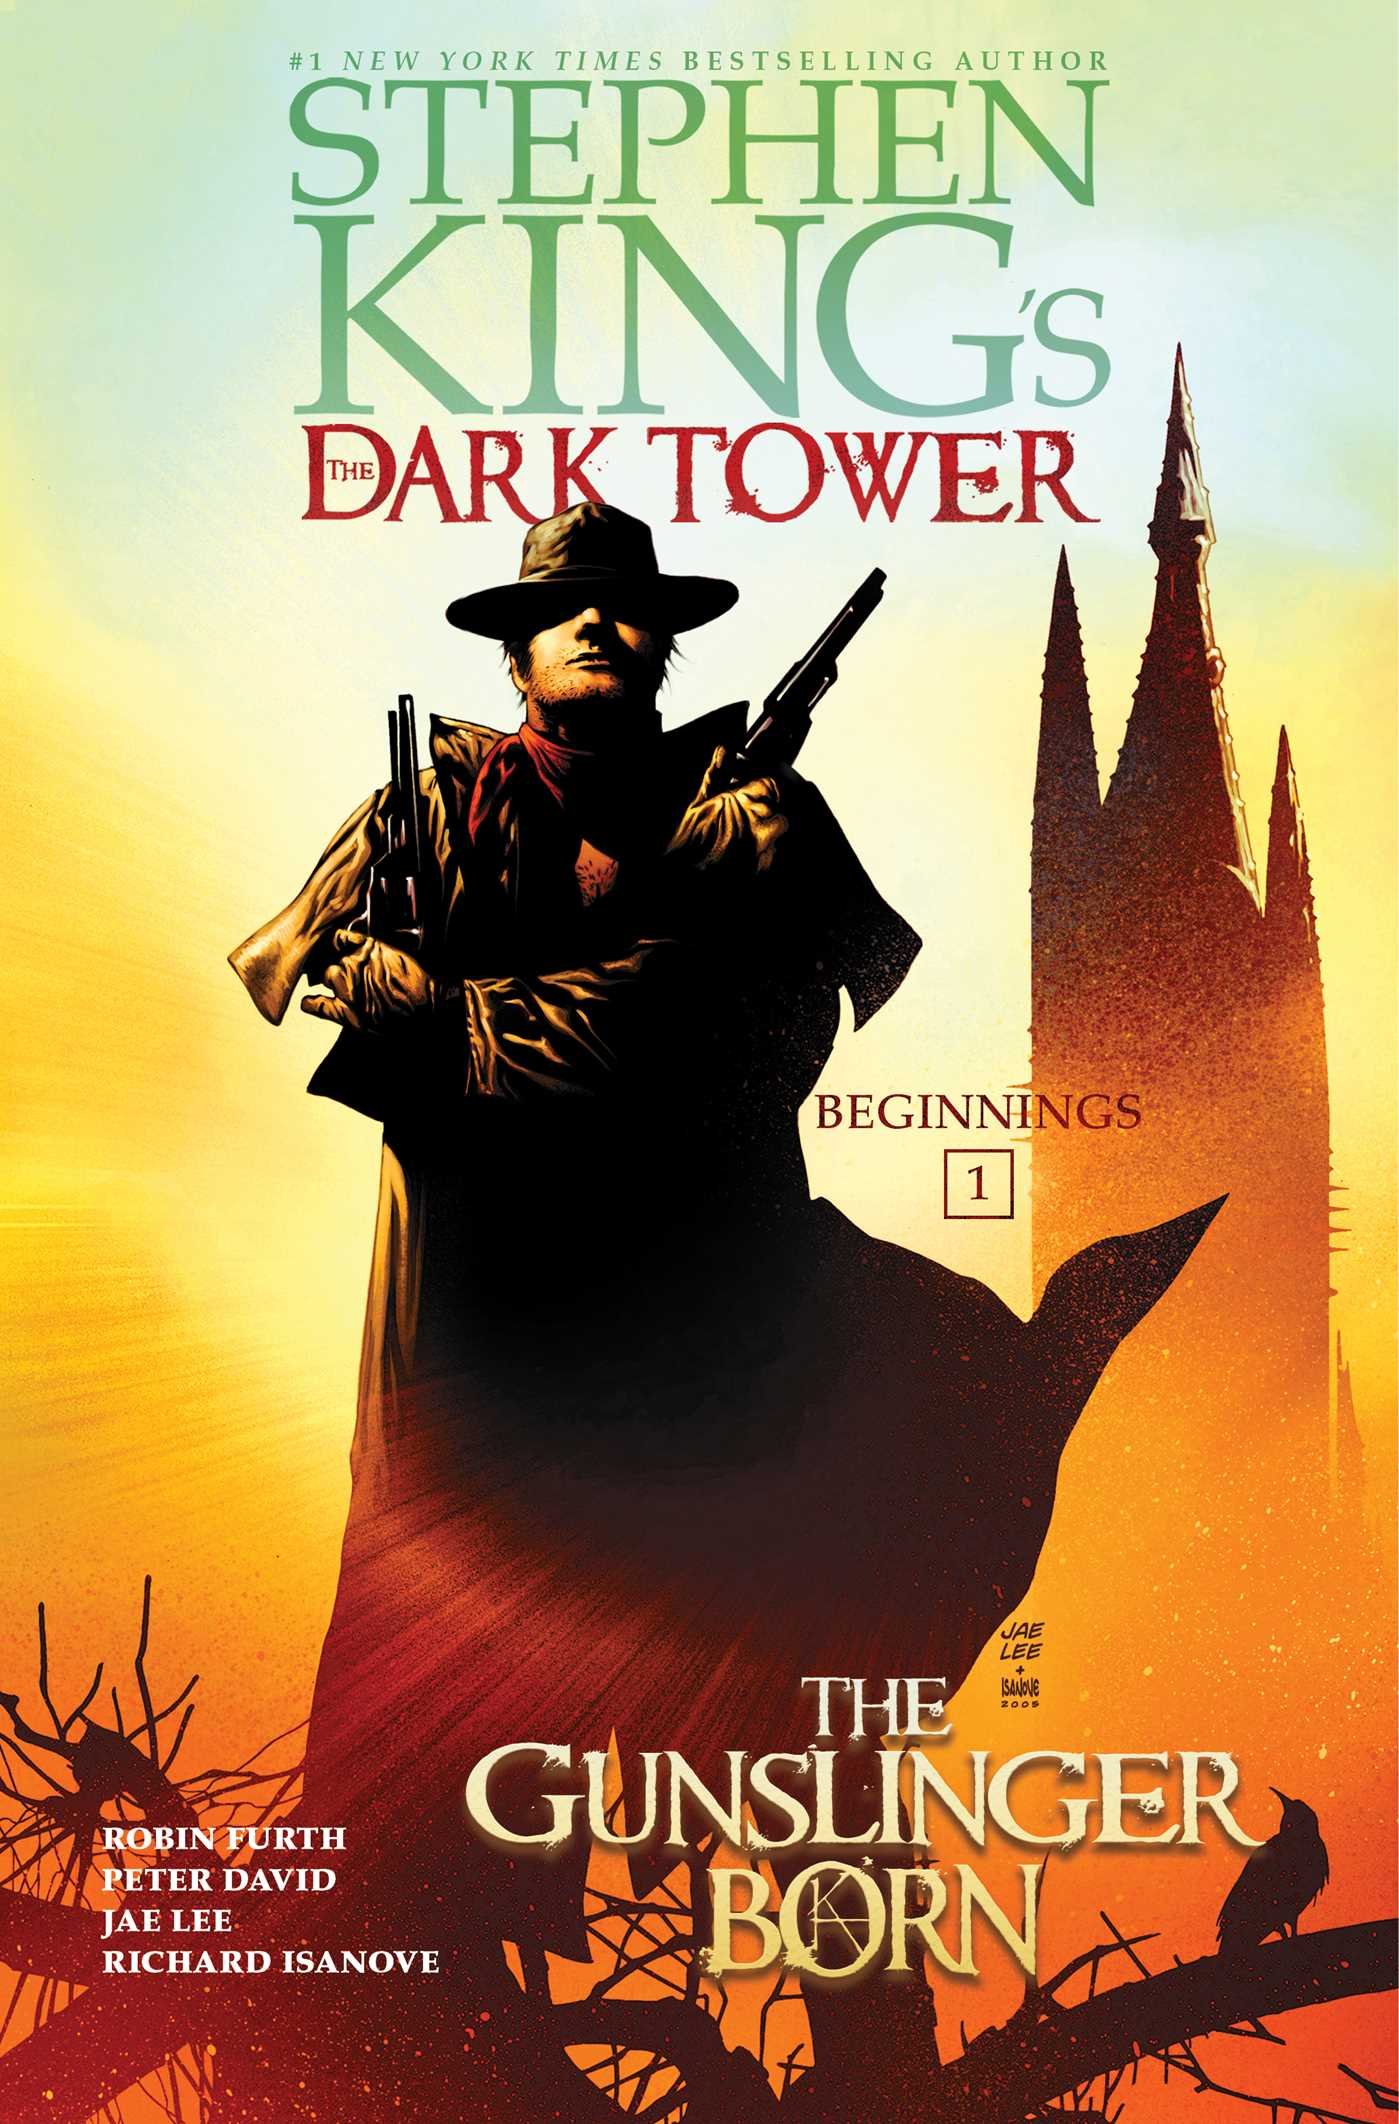 The Gunslinger Born (Stephen King's The Dark Tower: Beginnings Book 1)